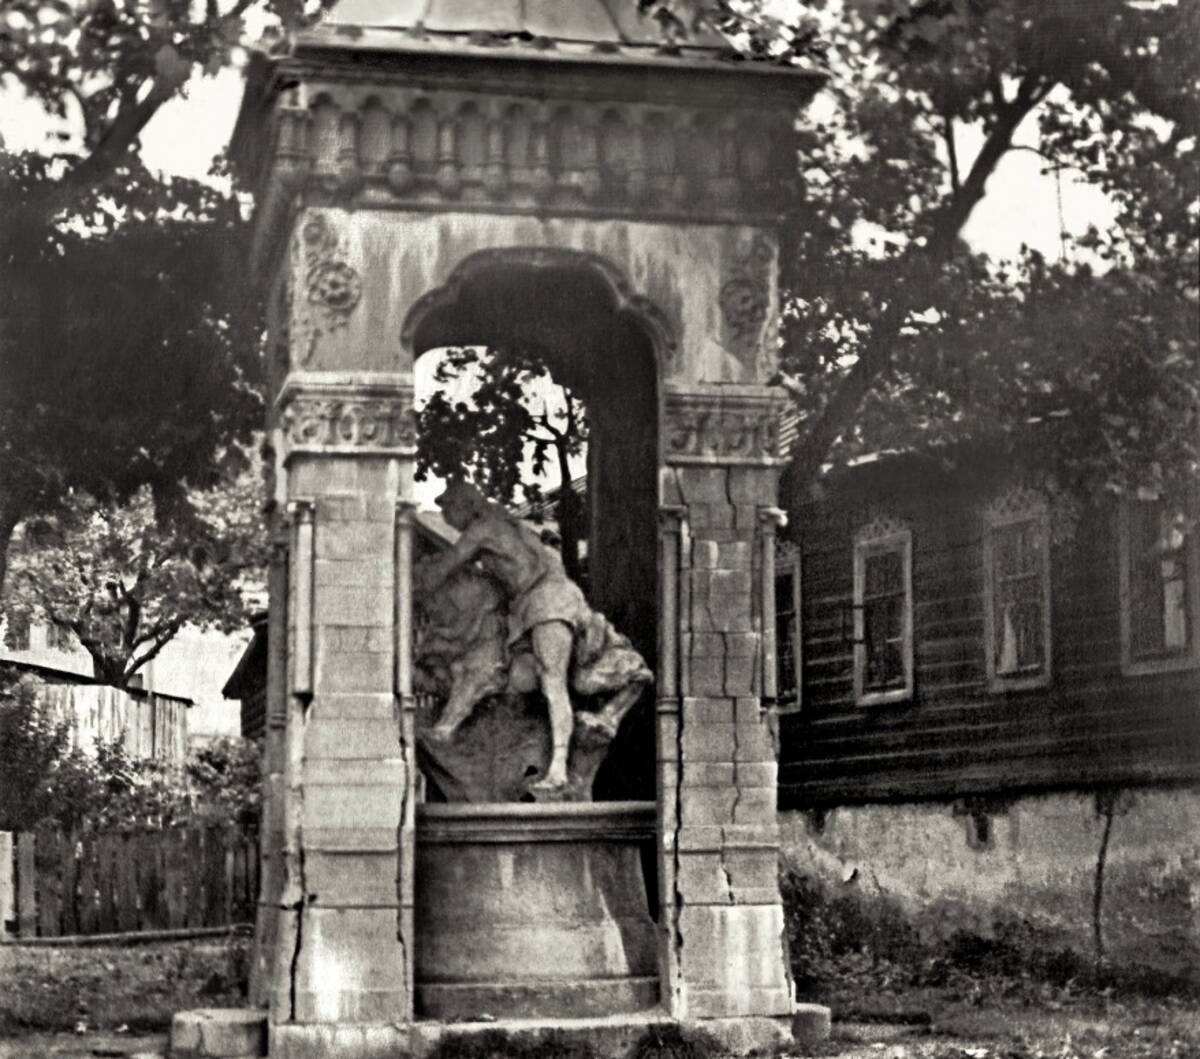 Жителям Брянской области показали старый снимок уникального фонтана Самсон